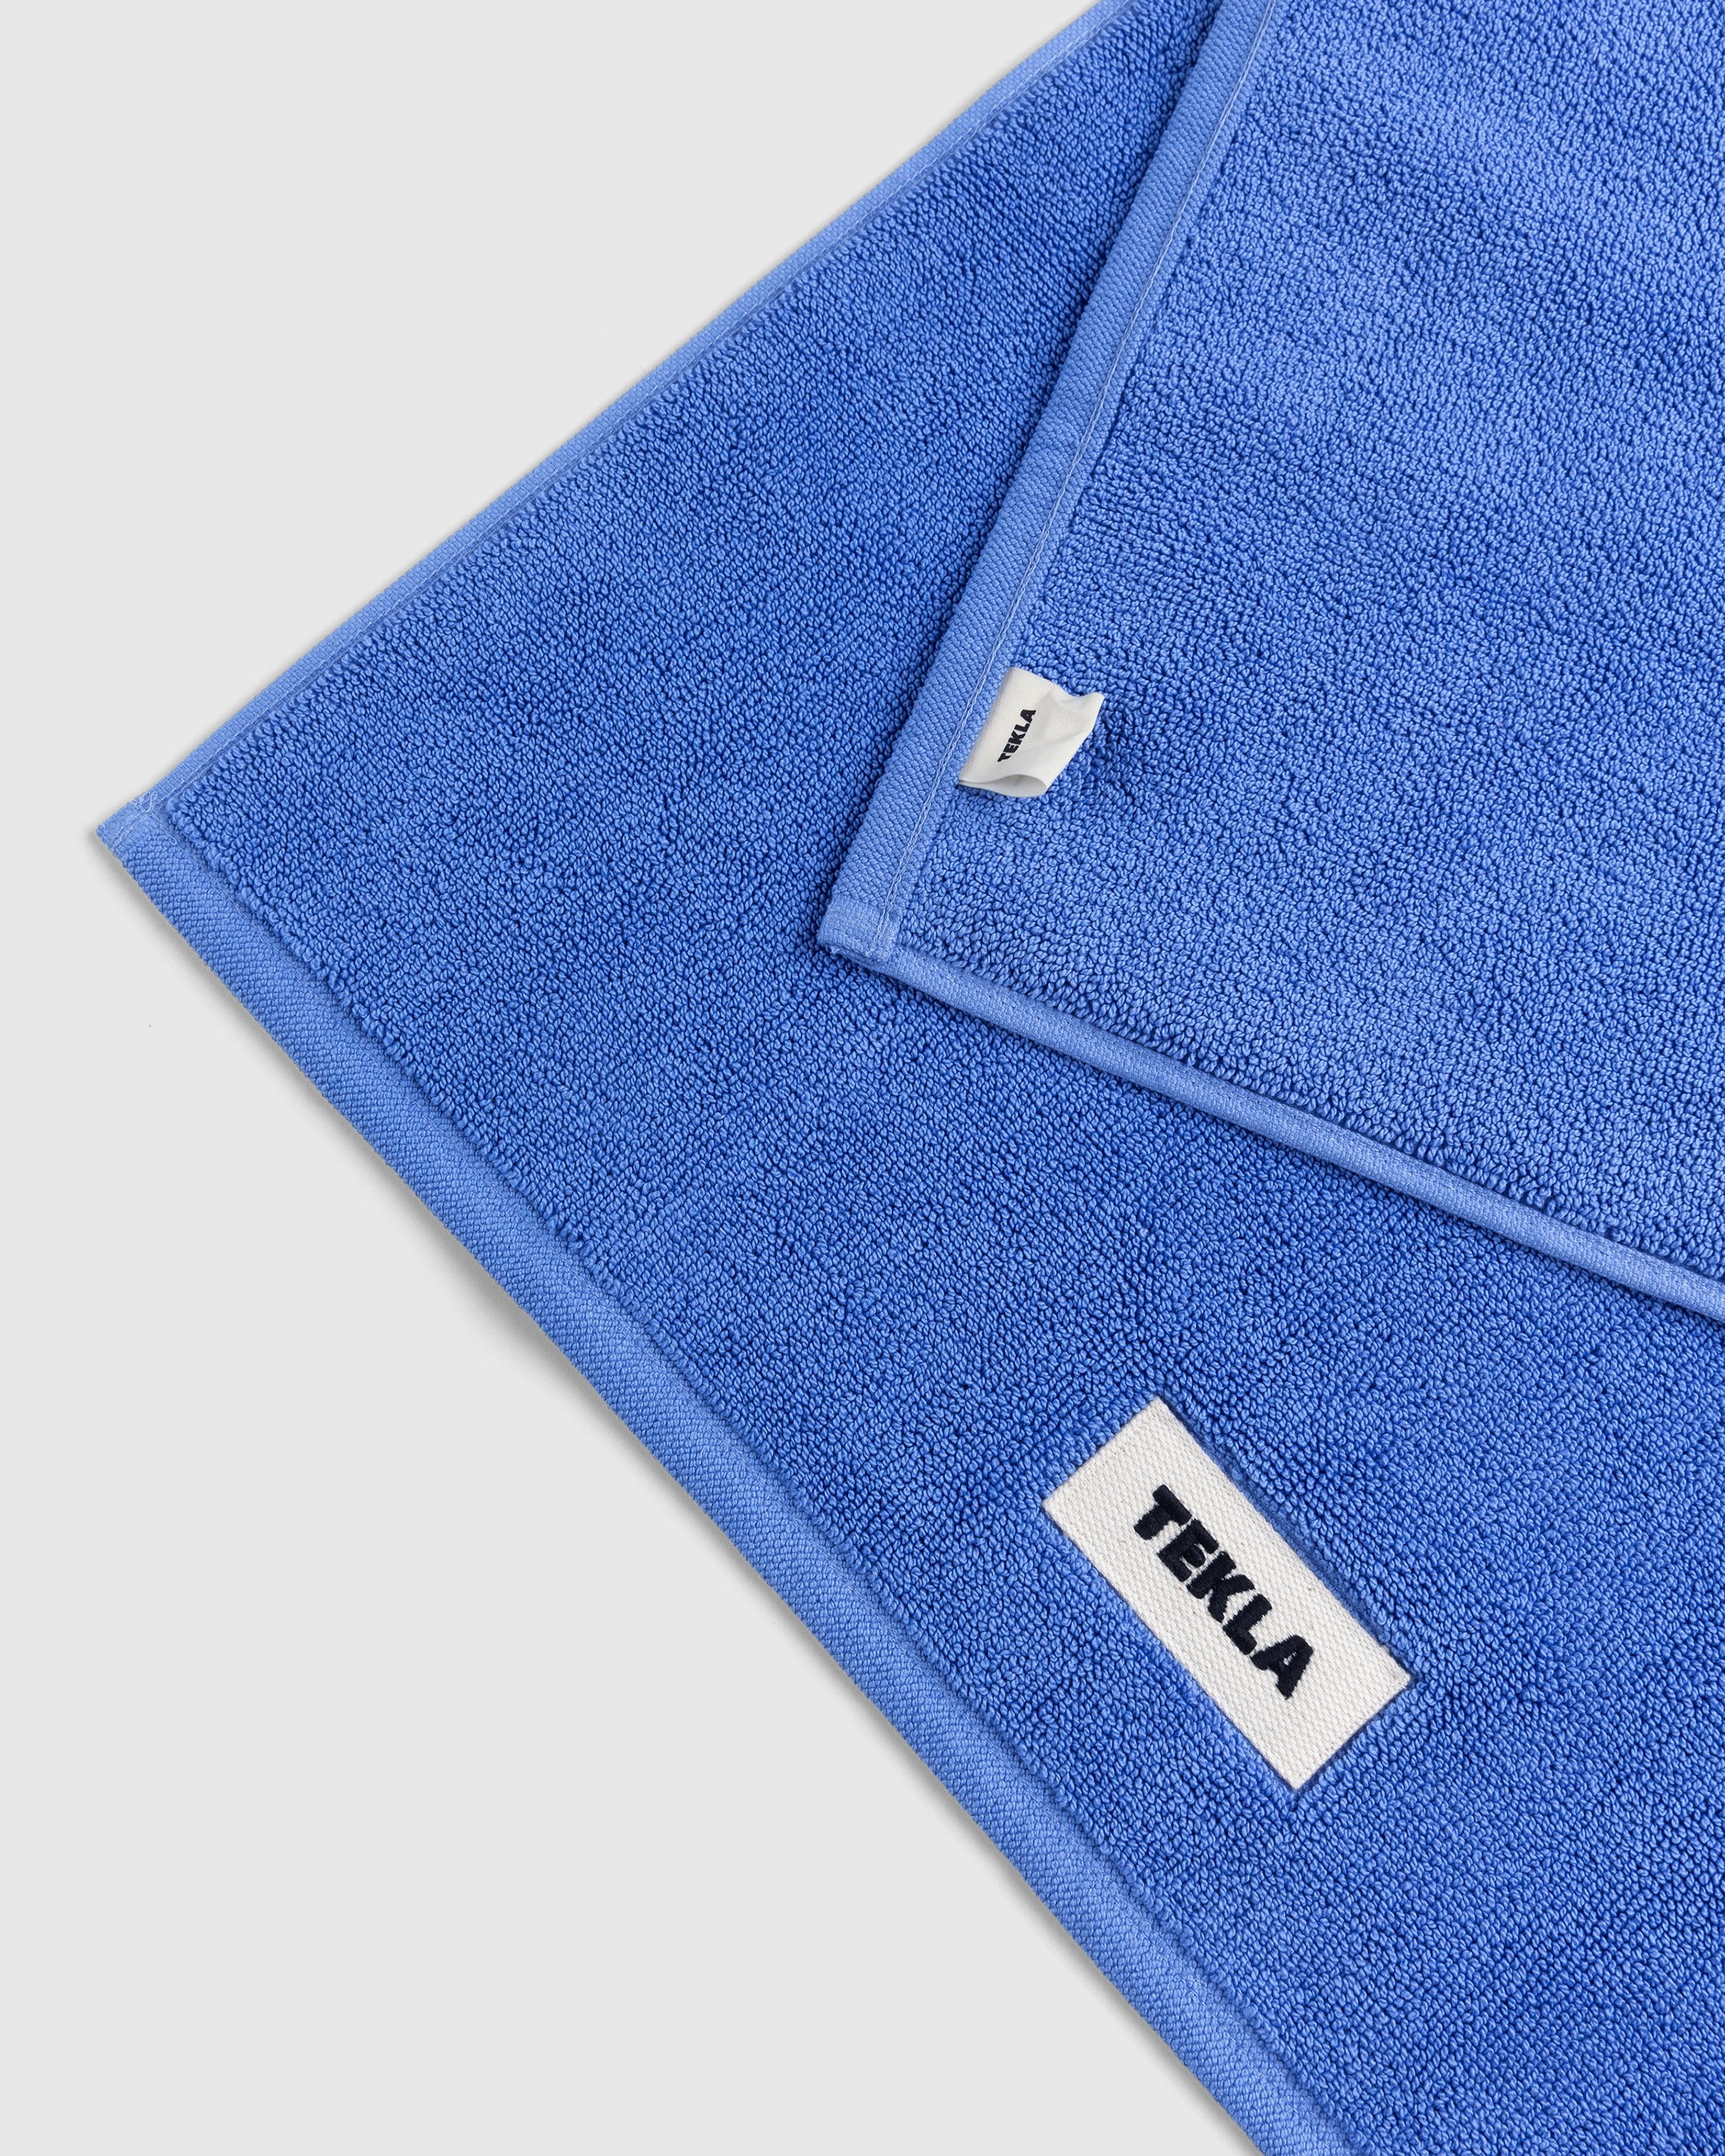 Tekla - Bath Mat Solid Clear Blue - Lifestyle - Blue - Image 3